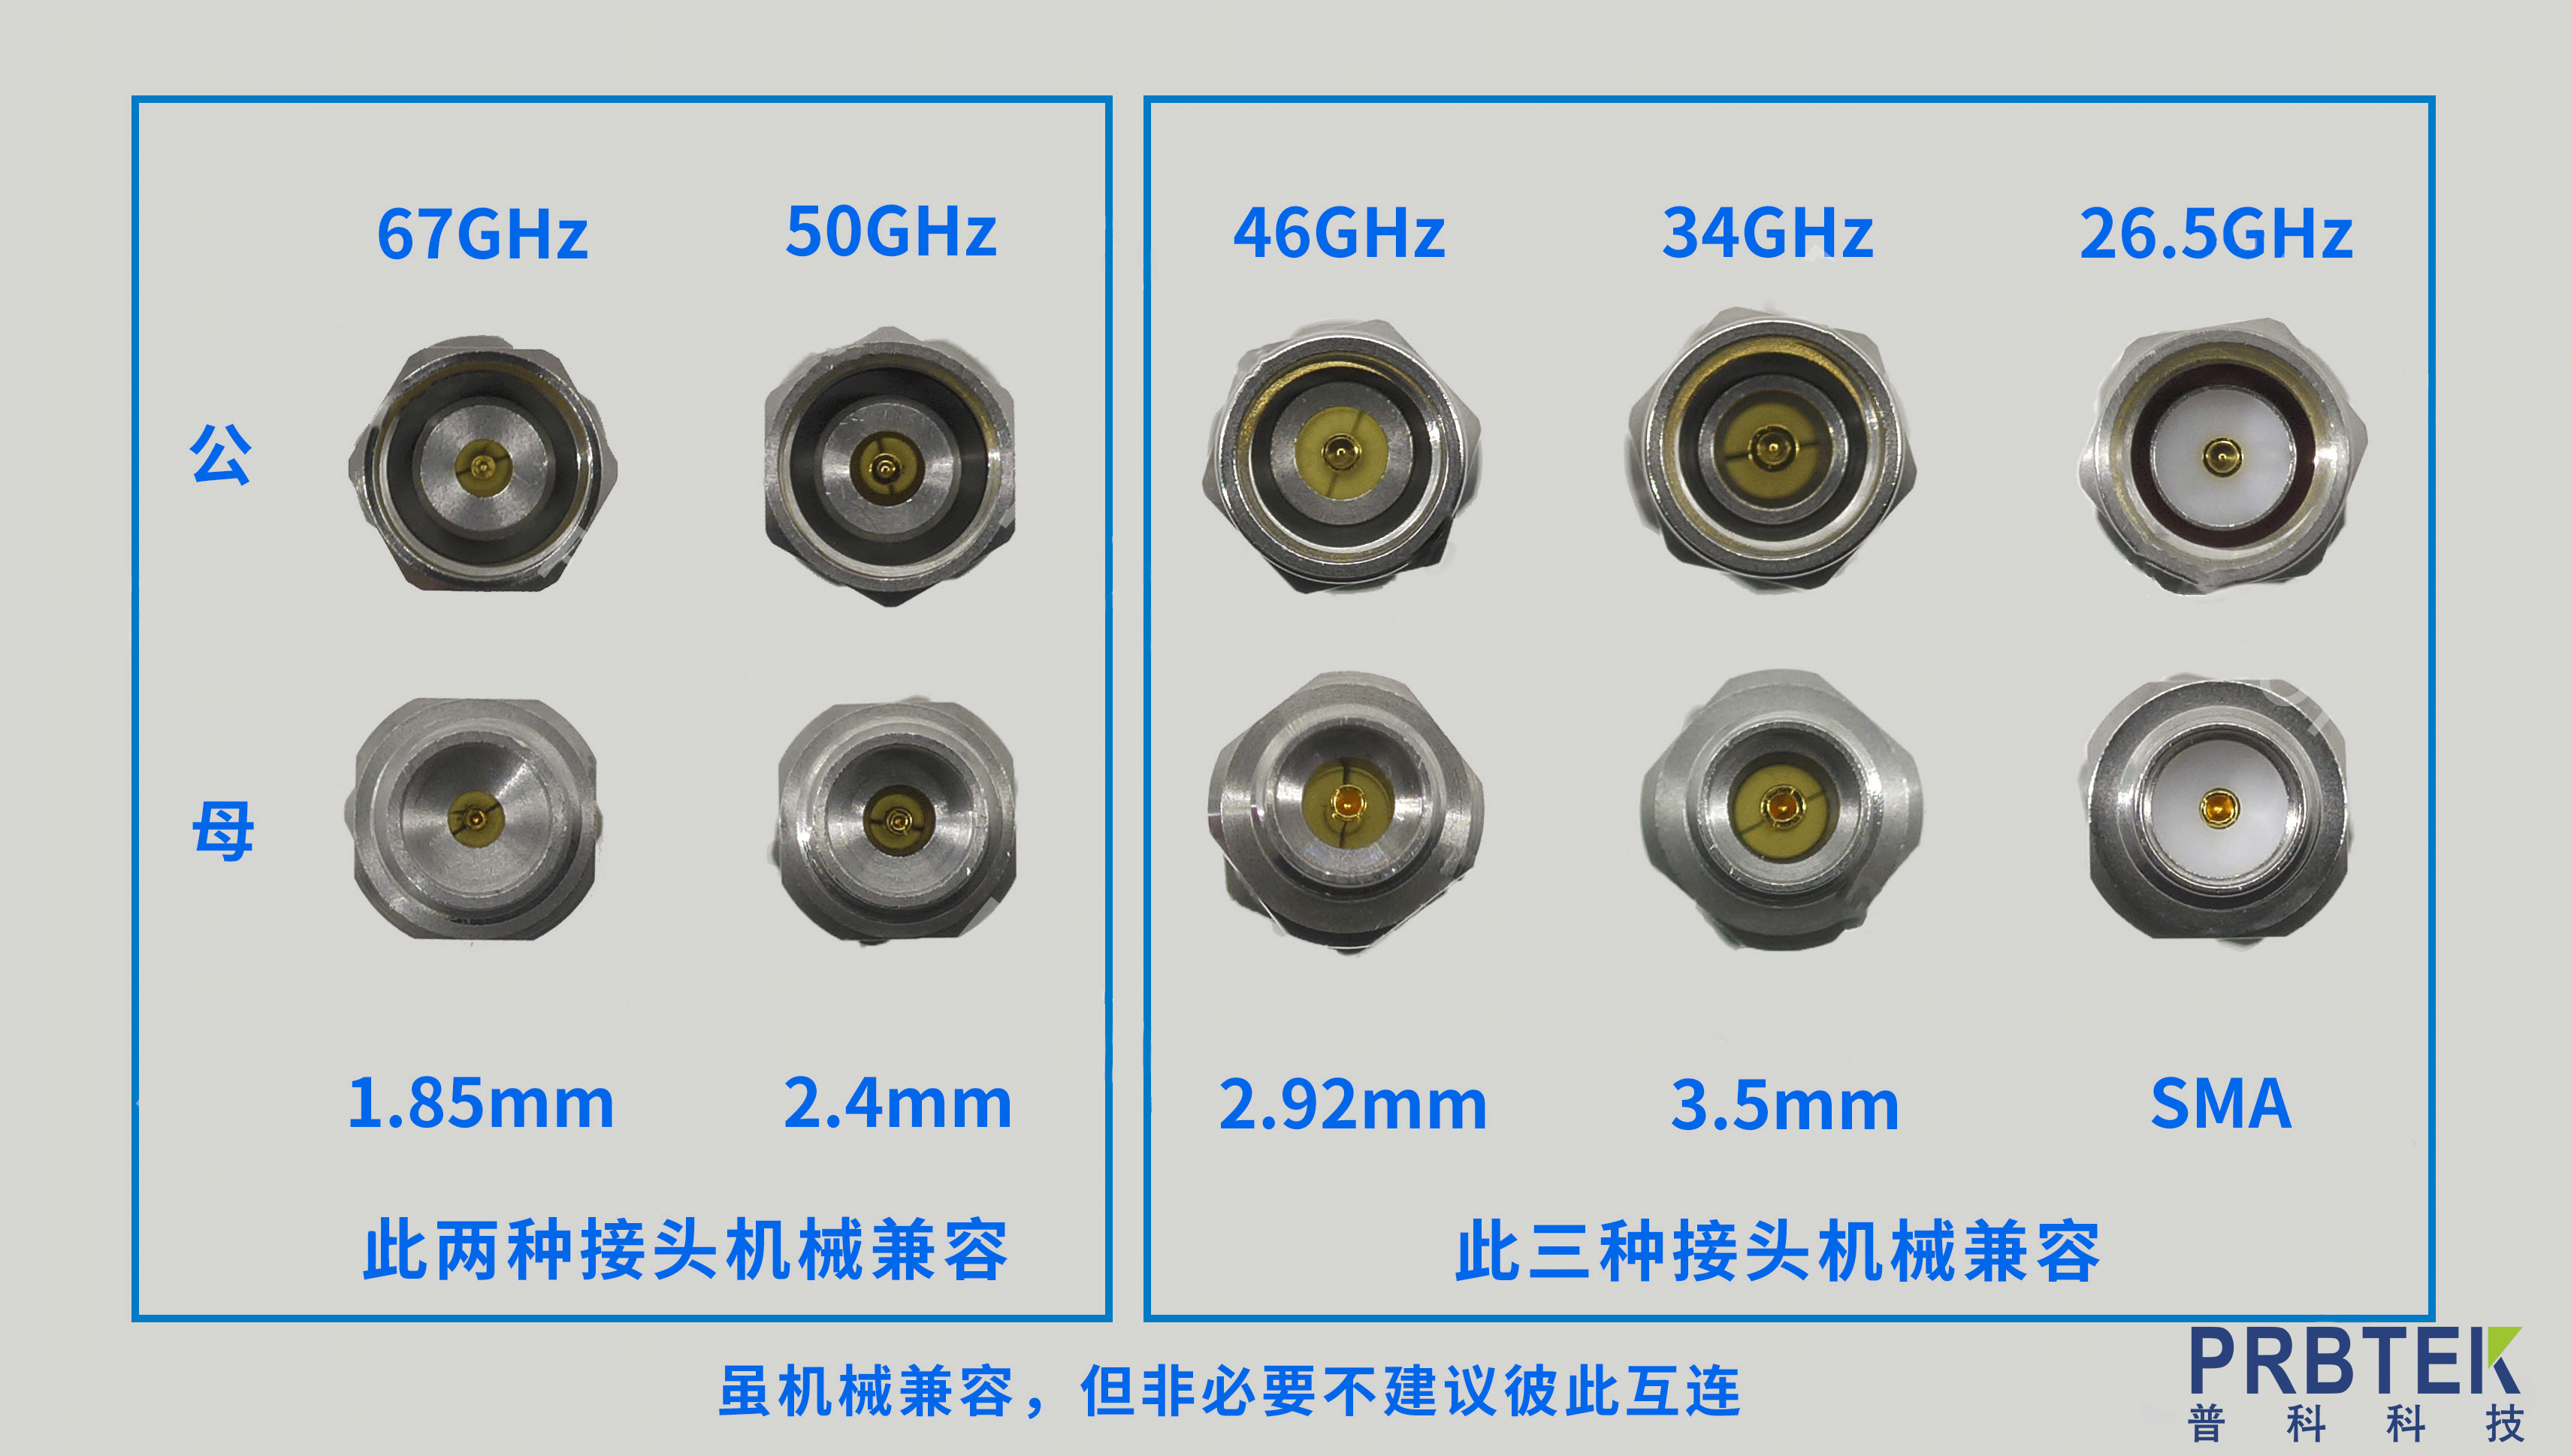 如何区分SMA、3.5mm、2.92mm、2.4mm、1.85mm这五种常见射频接头